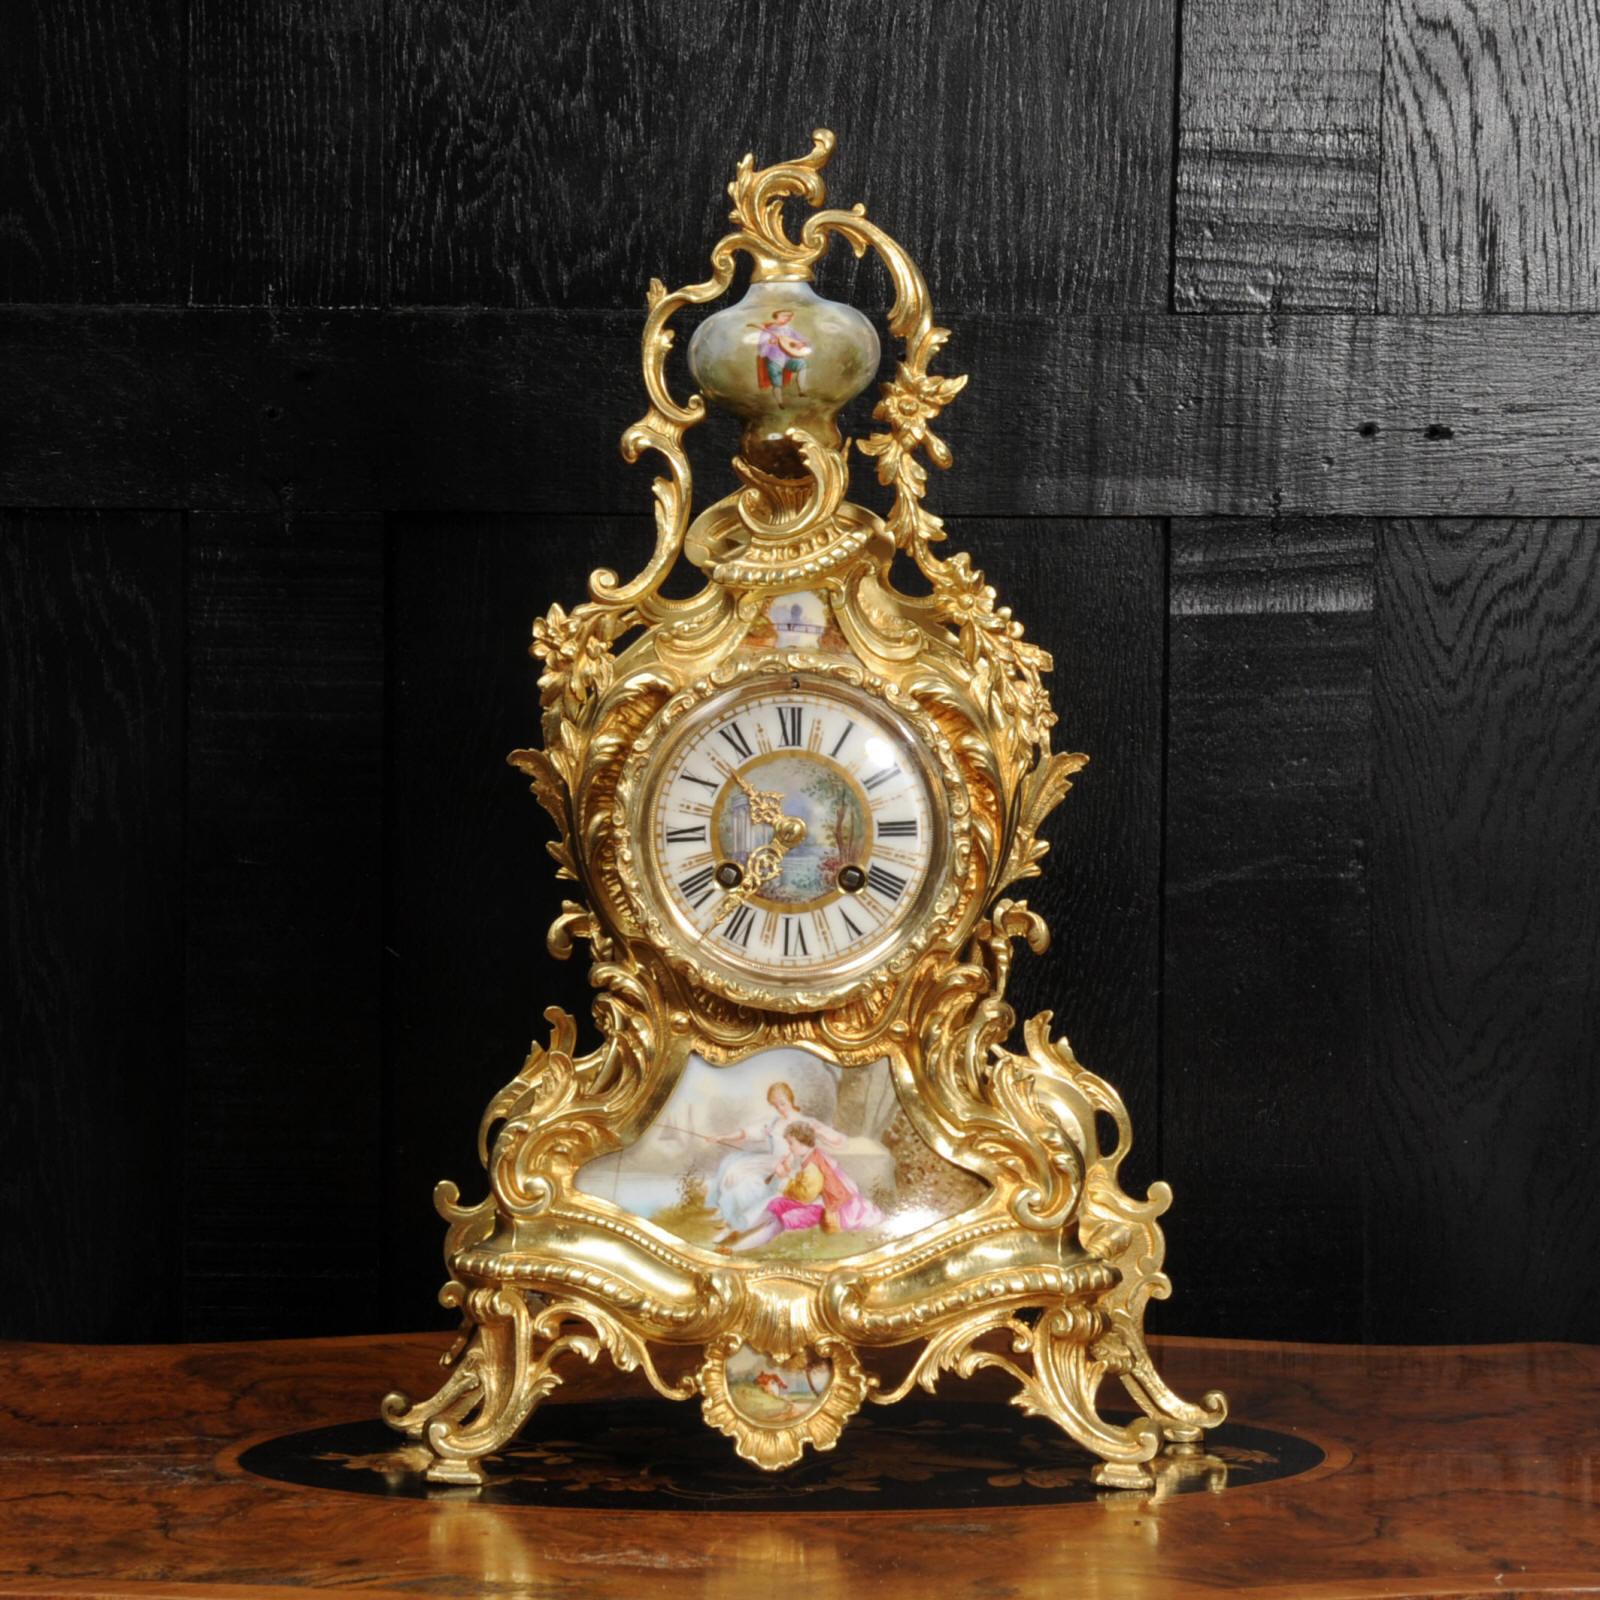 Eine atemberaubende antike französische Rokoko-Uhr, um 1880. Wunderschön aus fein vergoldeter Bronze und mit exquisitem Porzellan im Stil von Sèvres montiert. Das Gehäuse hat ein tailliertes Design mit üppigem, verschlungenem Akanthusdekor und